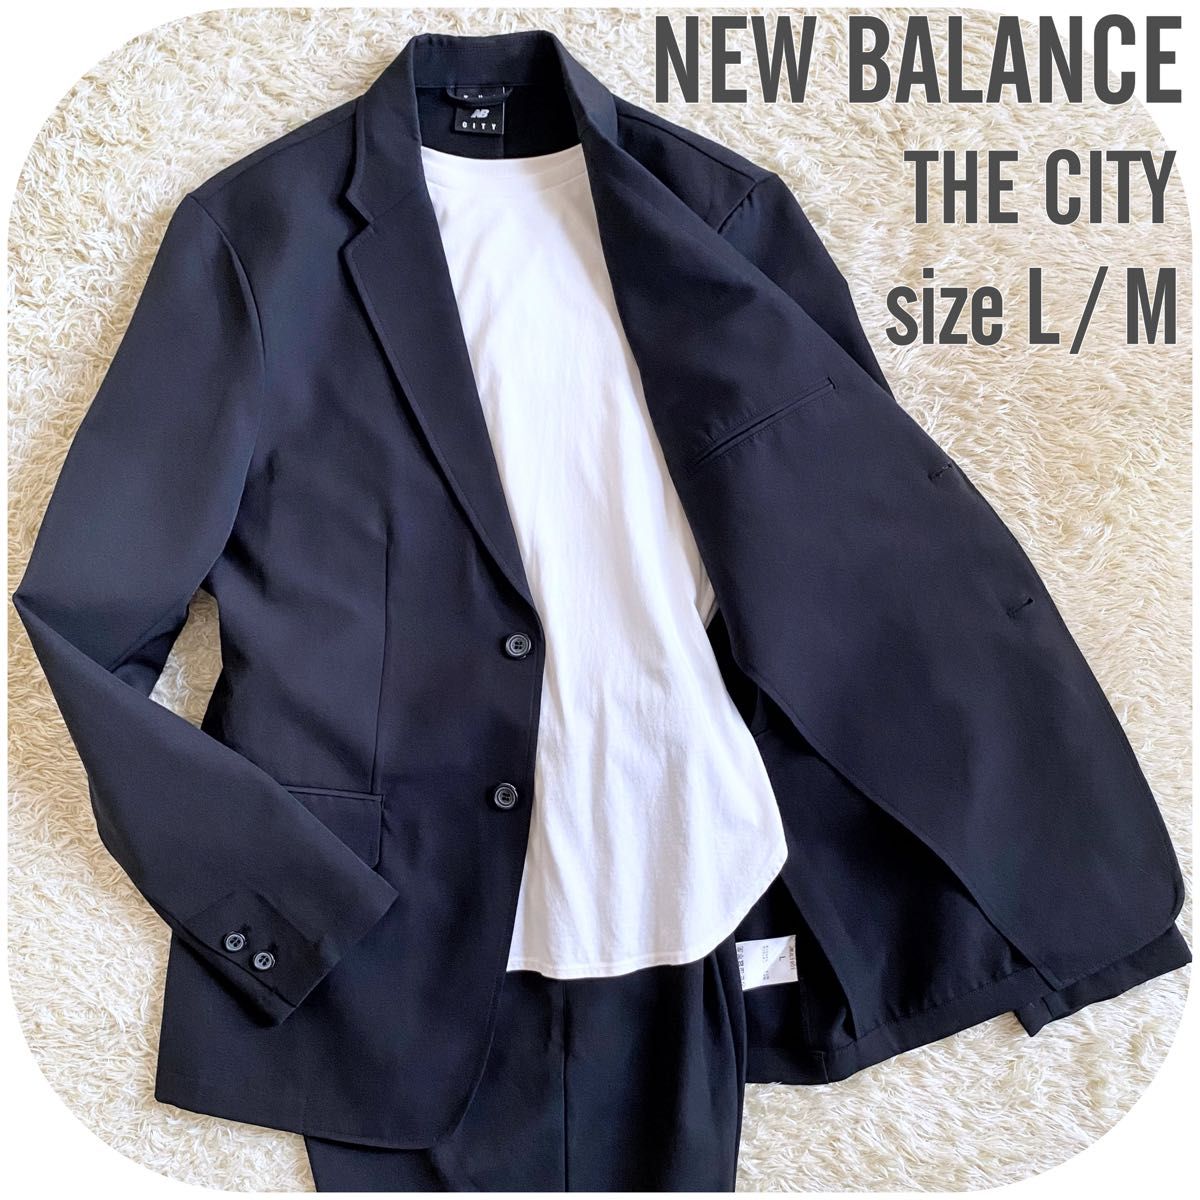 NEW BALANCE ニューバランス THE CITY セットアップスーツ L/M ブラック ジャケットテーパードパンツ メンズ